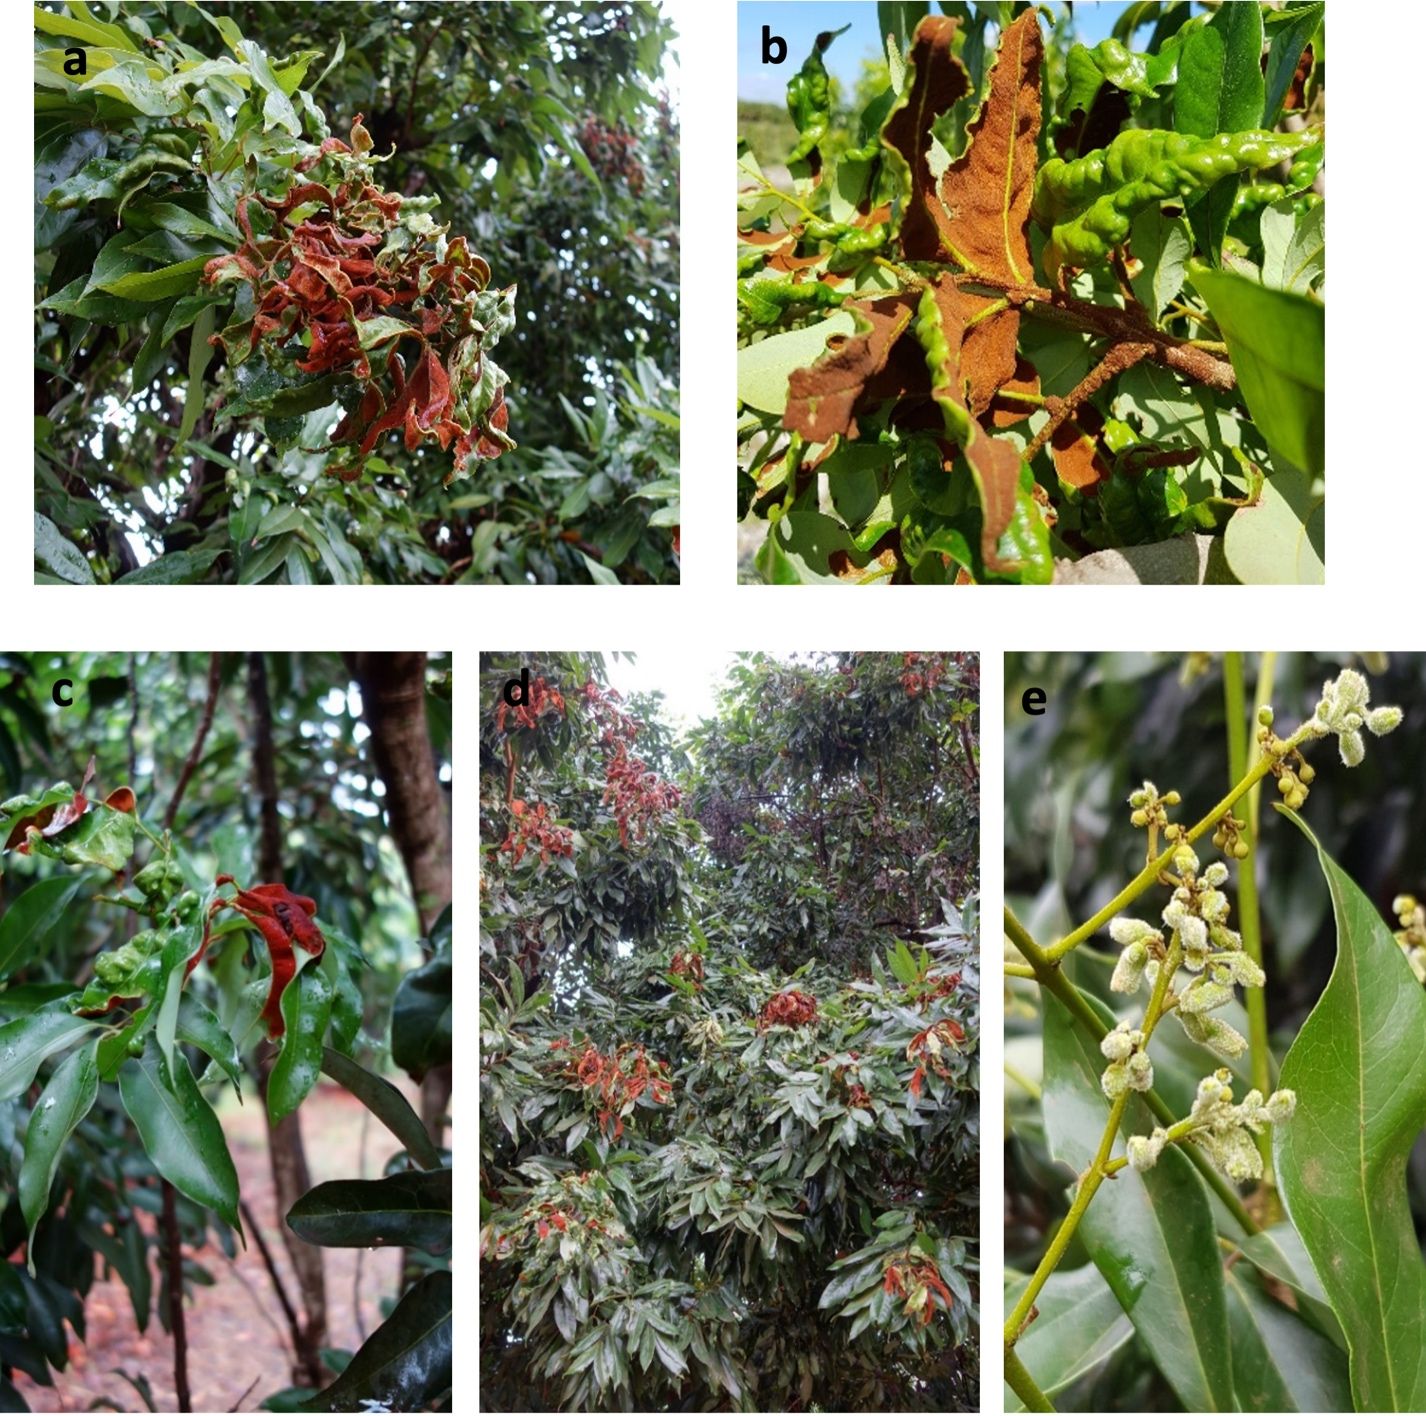 Variación en color y densidad de erinosis en hojas (a-d) y erinosis recientemente desarrollada en fruto joven de lichi (e). 